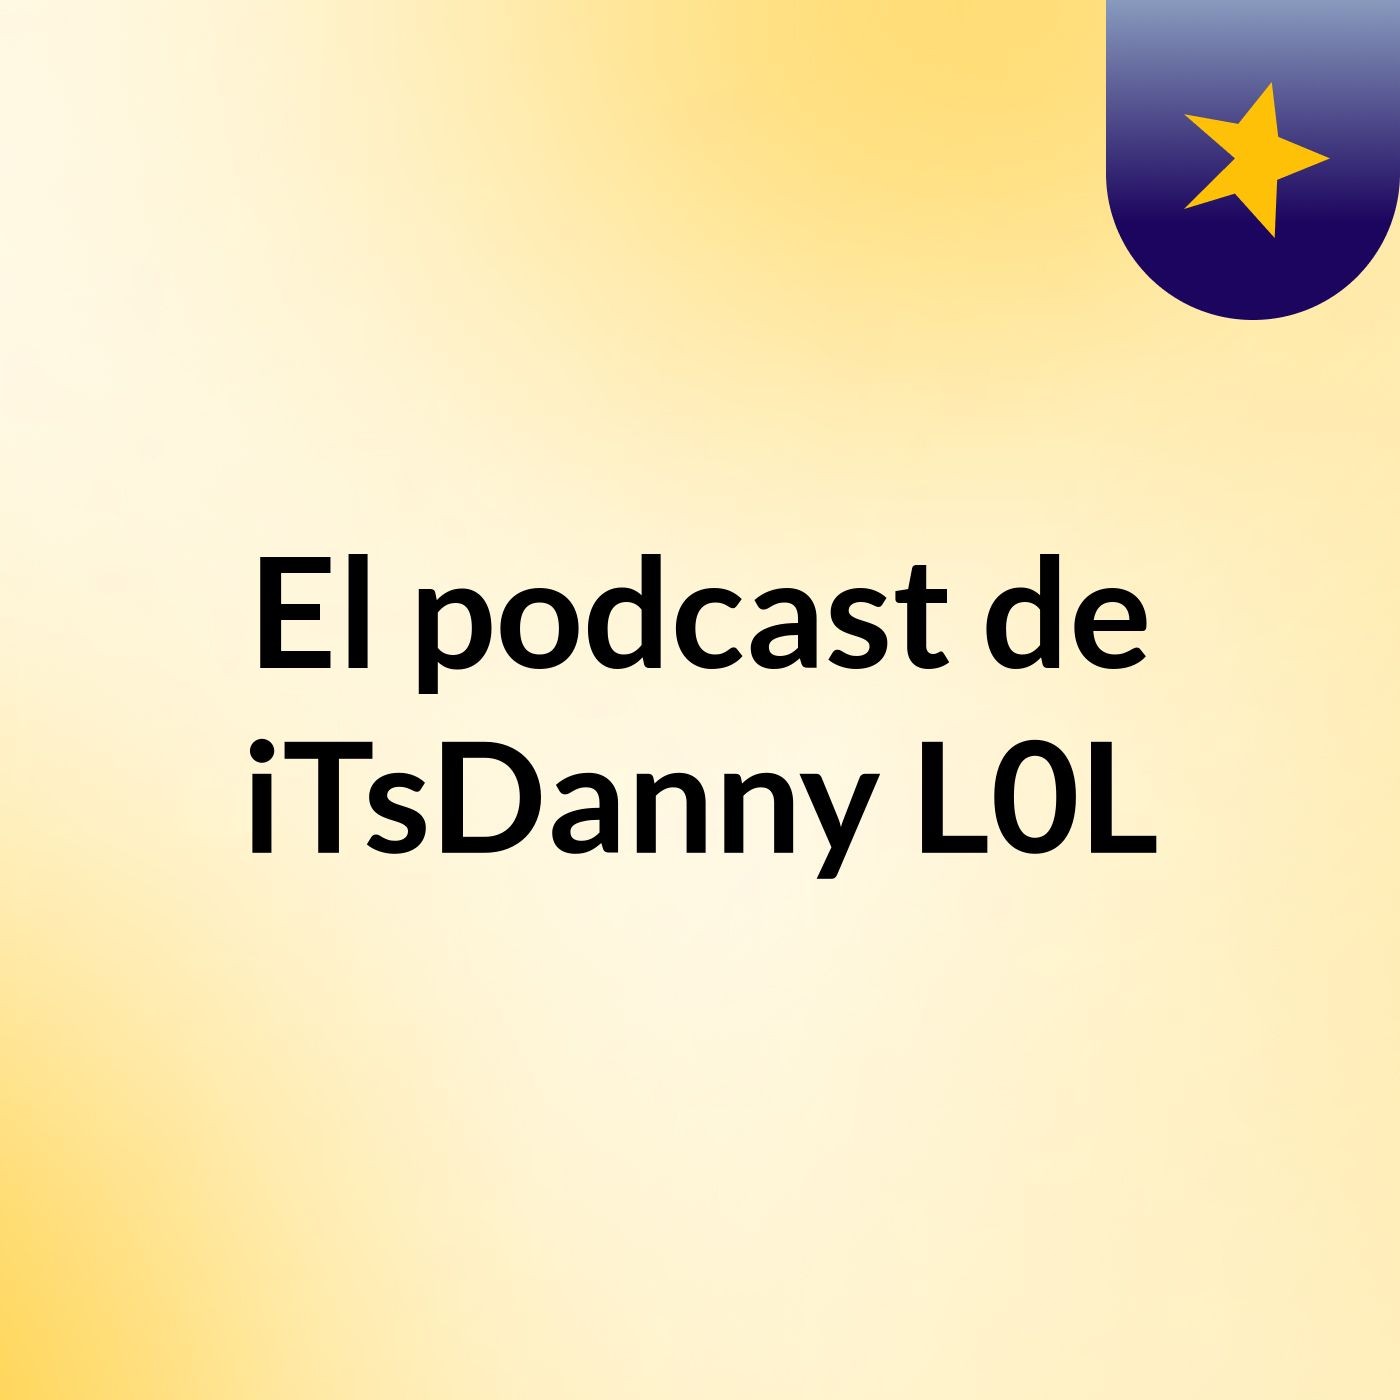 Episodio 2 - El podcast de iTsDanny L0L